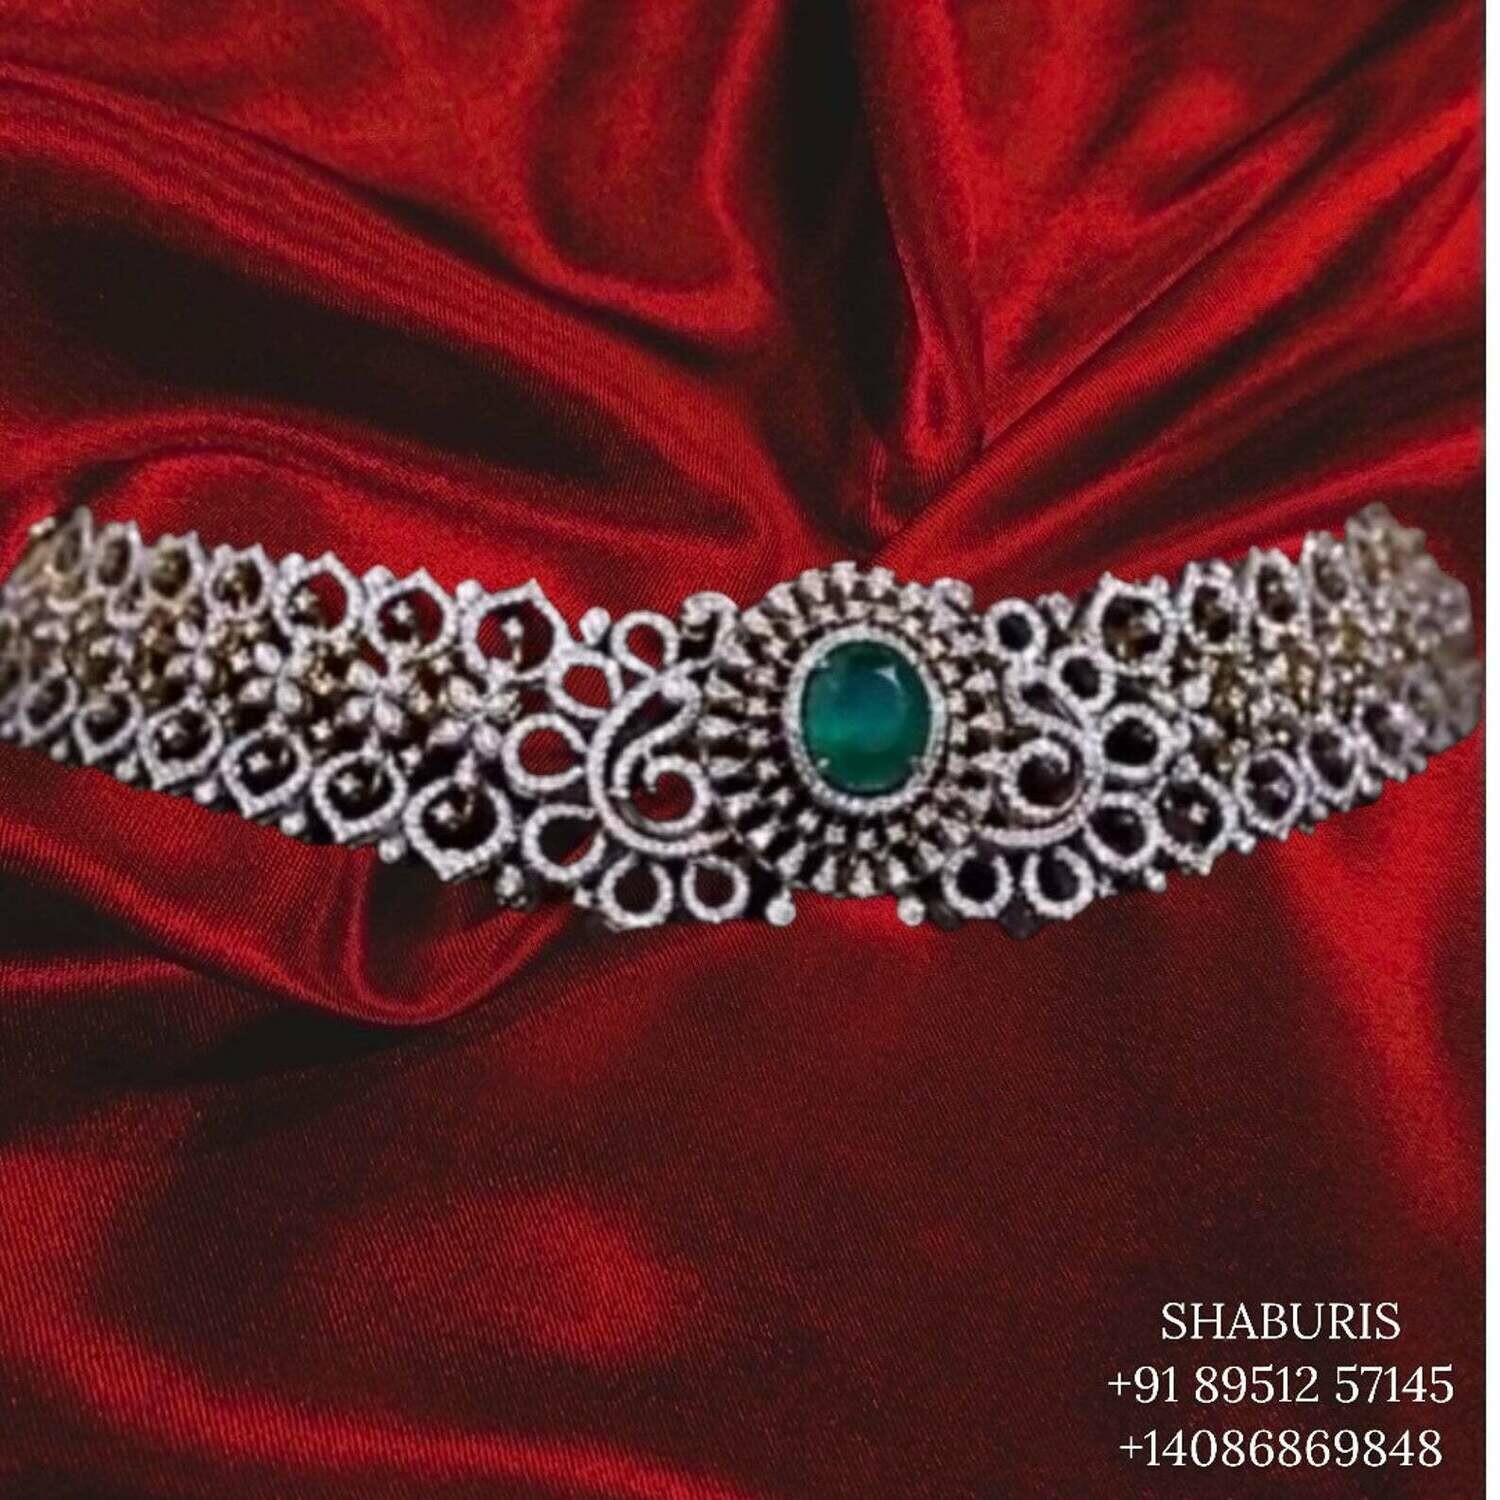 Latest Indian Jewelry,South Indian Jewelry,diamond choke,bridal choker,Indian Wedding Jewelry,pure Silver indian jewelry - NIHIRA - SHABURIS